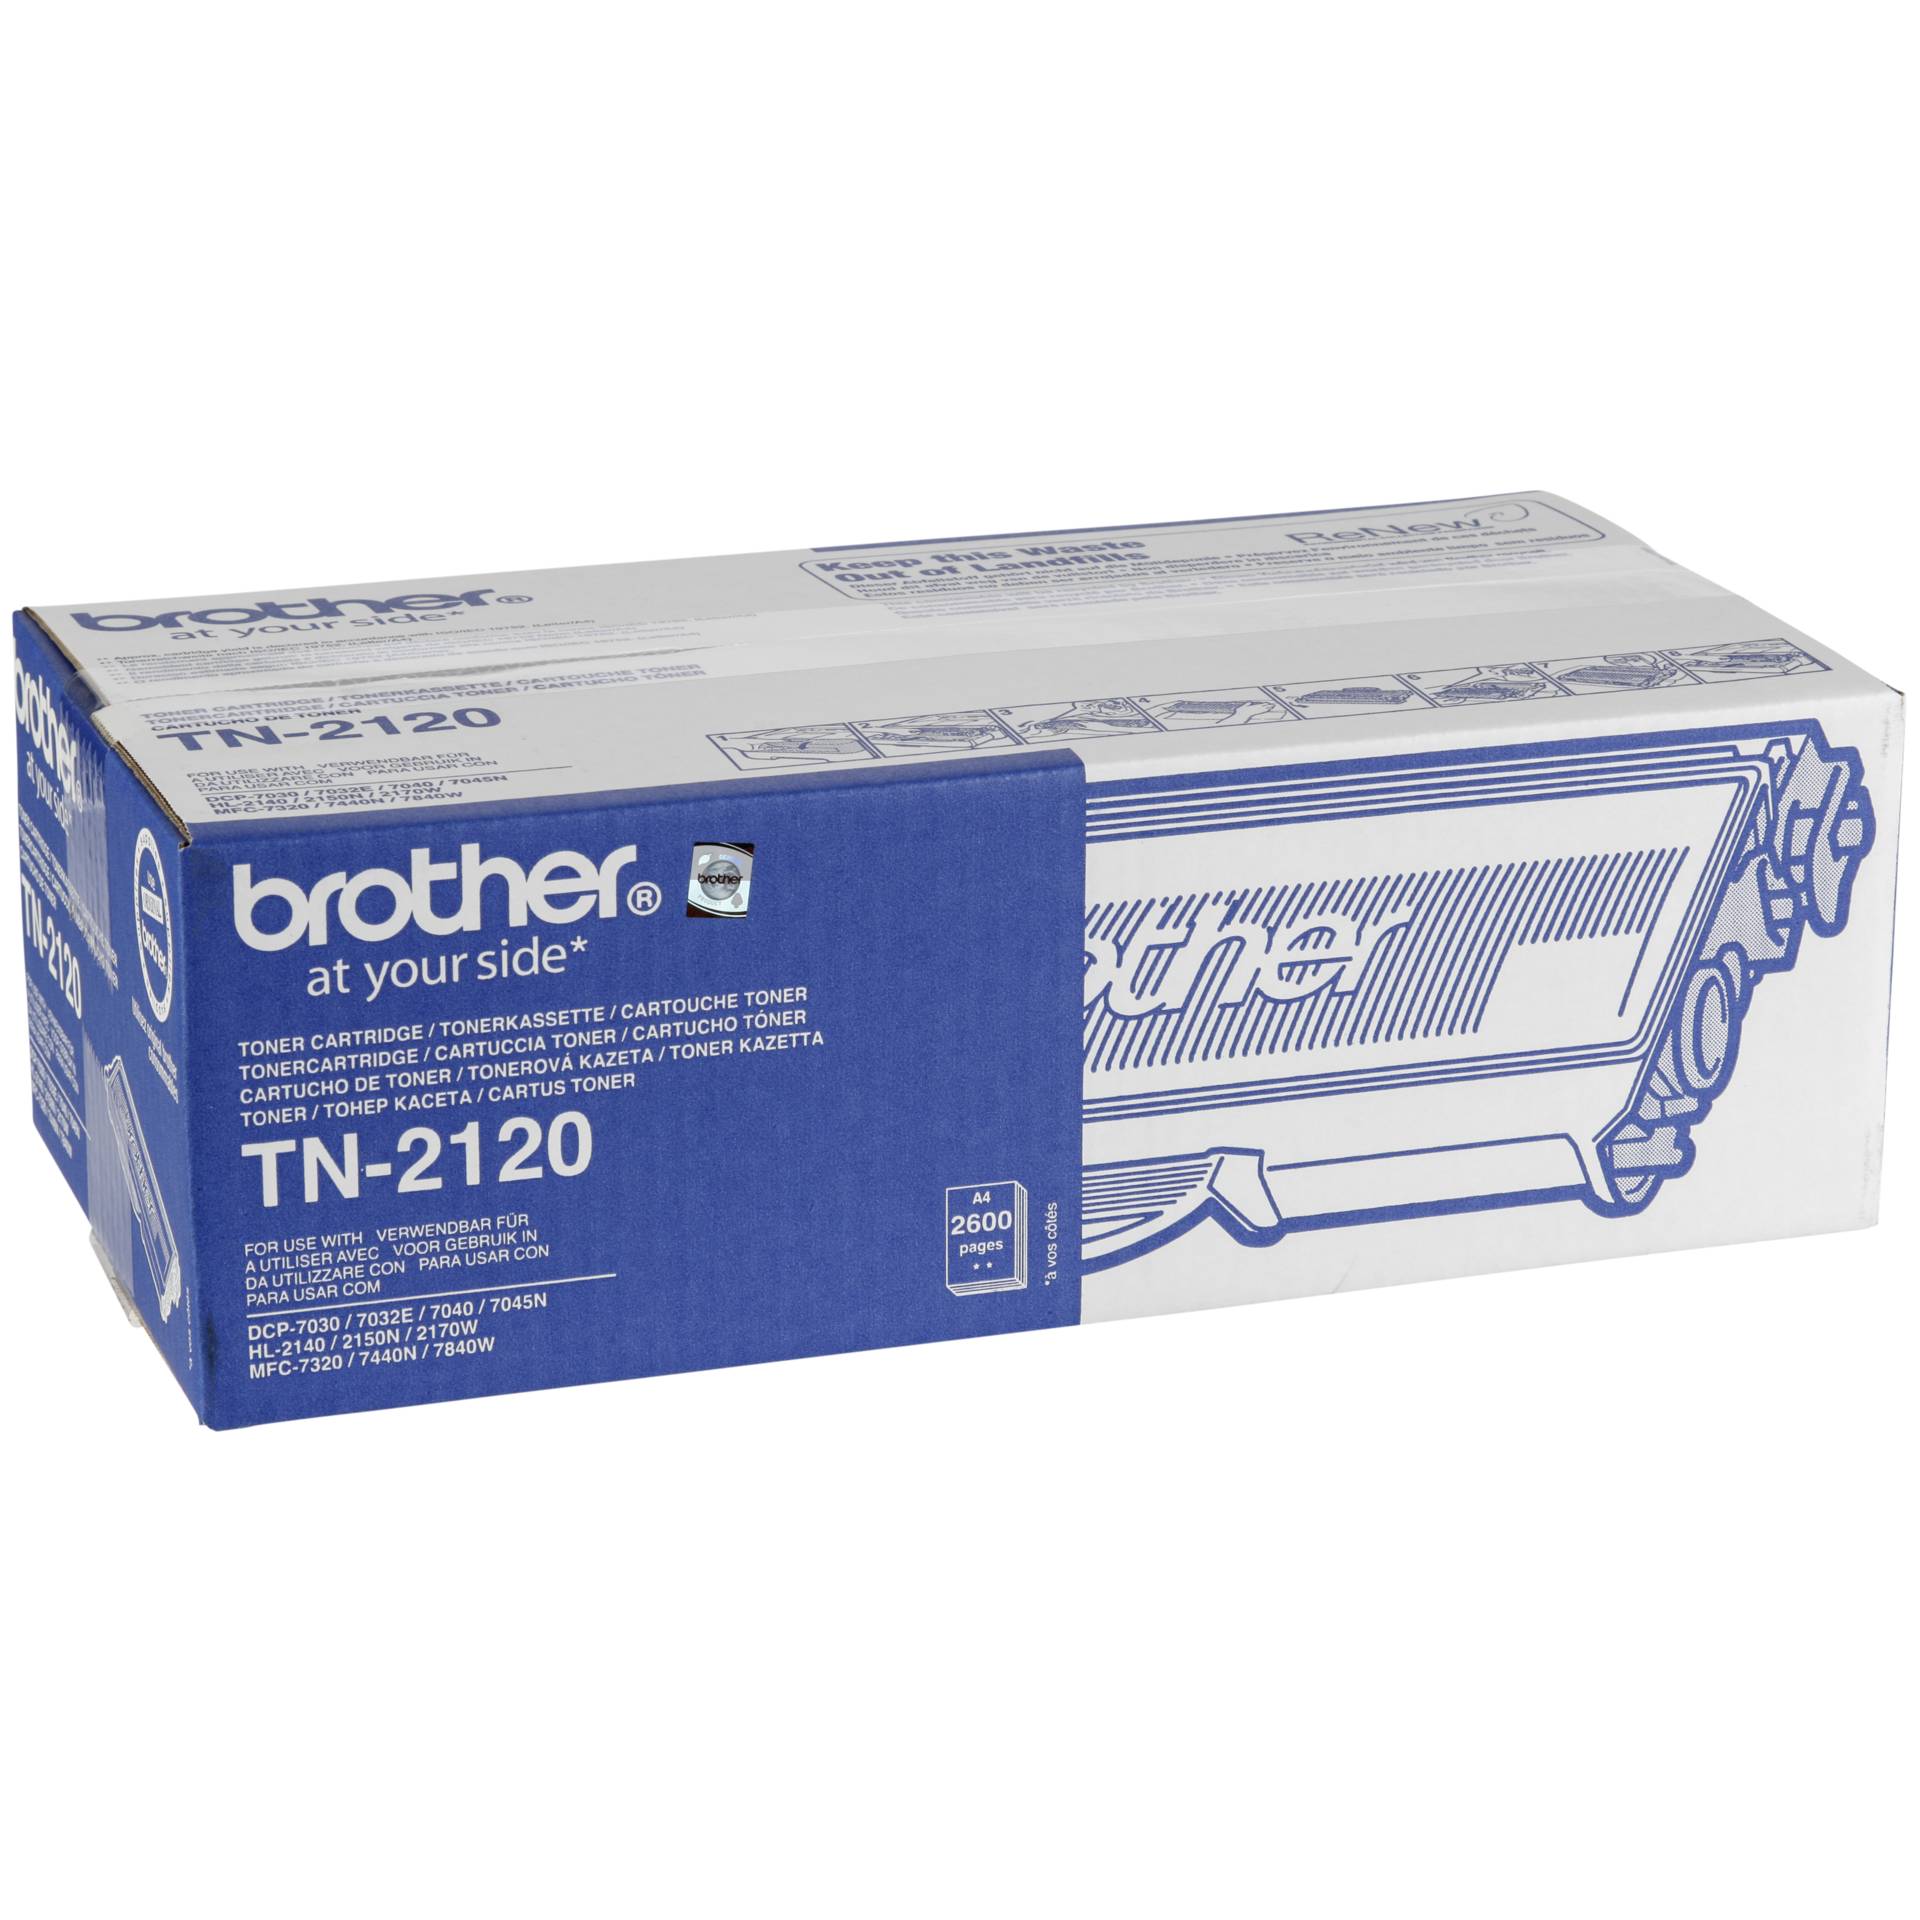 Brother TN-2120 cartuccia nero